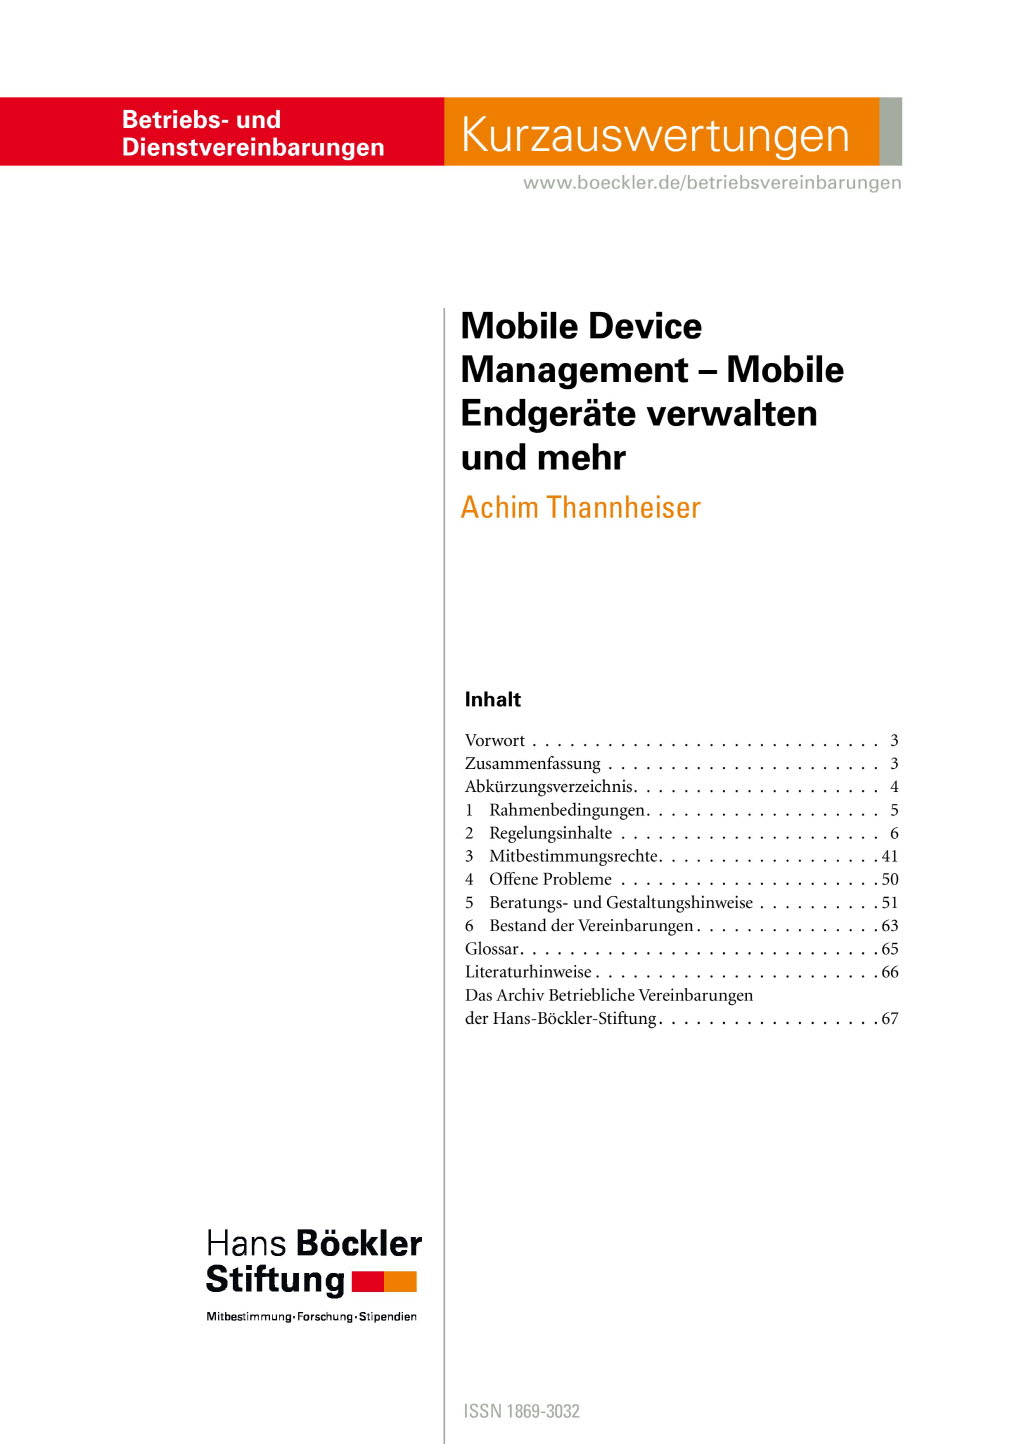 Mobile Device Management - Mobile Endgeräte verwalten und mehr